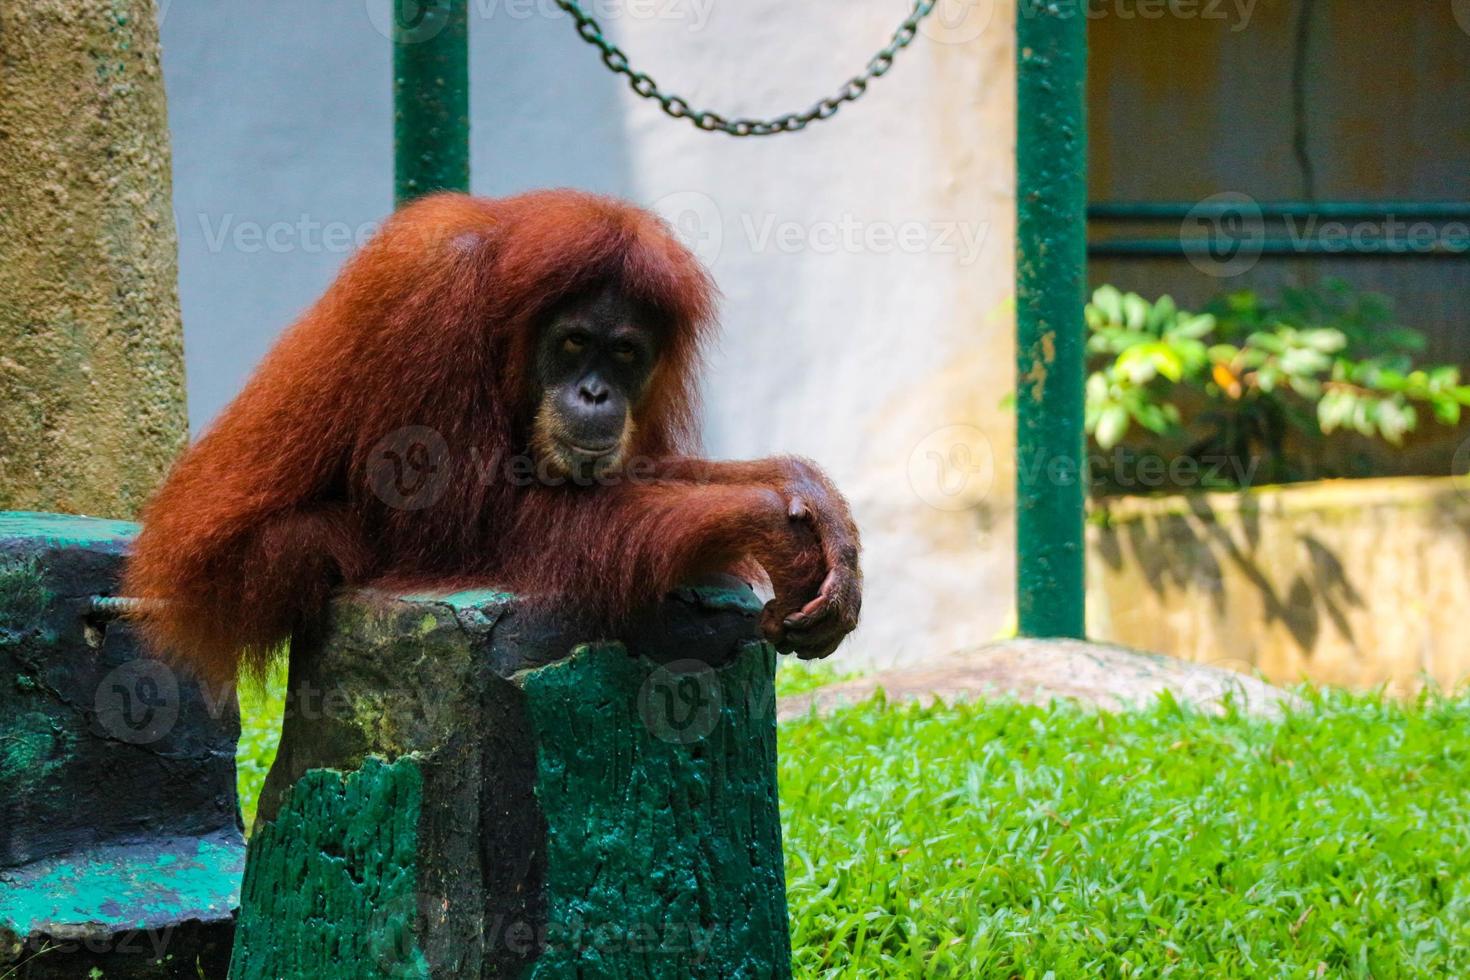 Ceci est une photo d'un orang-outan de Sumatra au zoo de Ragunan.